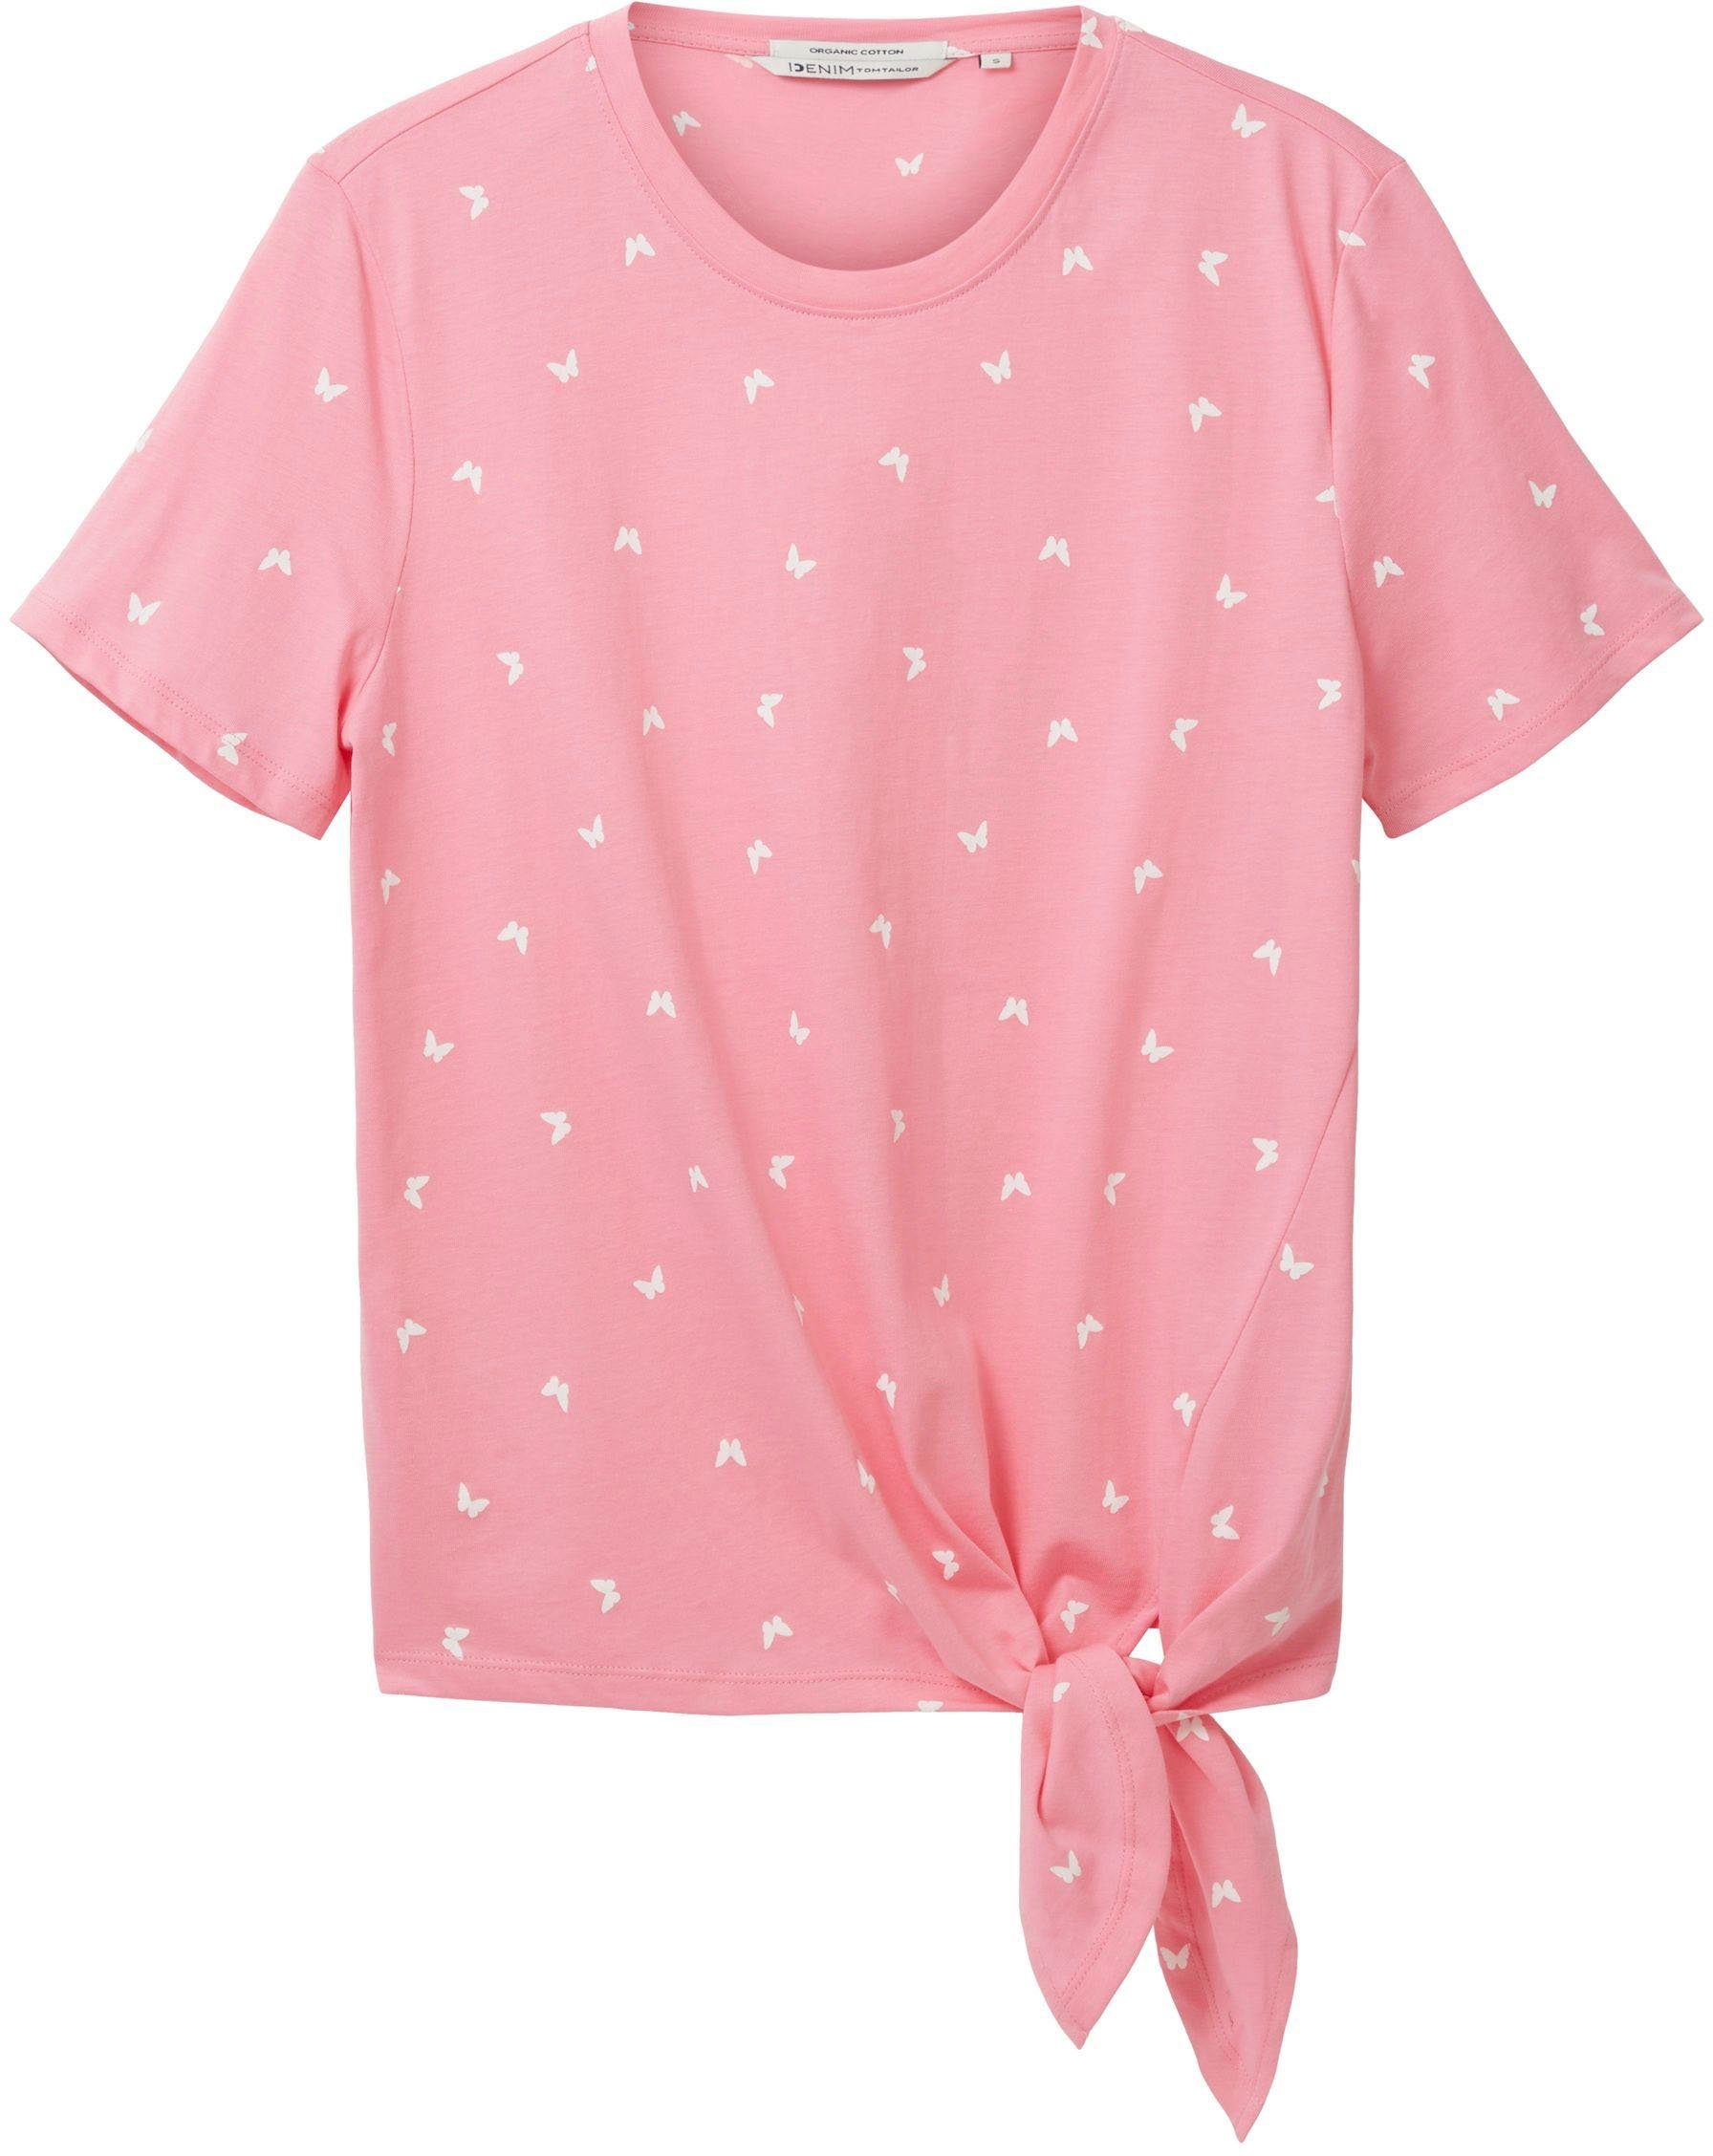 TOM TAILOR Denim T-Shirt Schlaufen einen Bund am Knoten pink für vorhanden gemustert